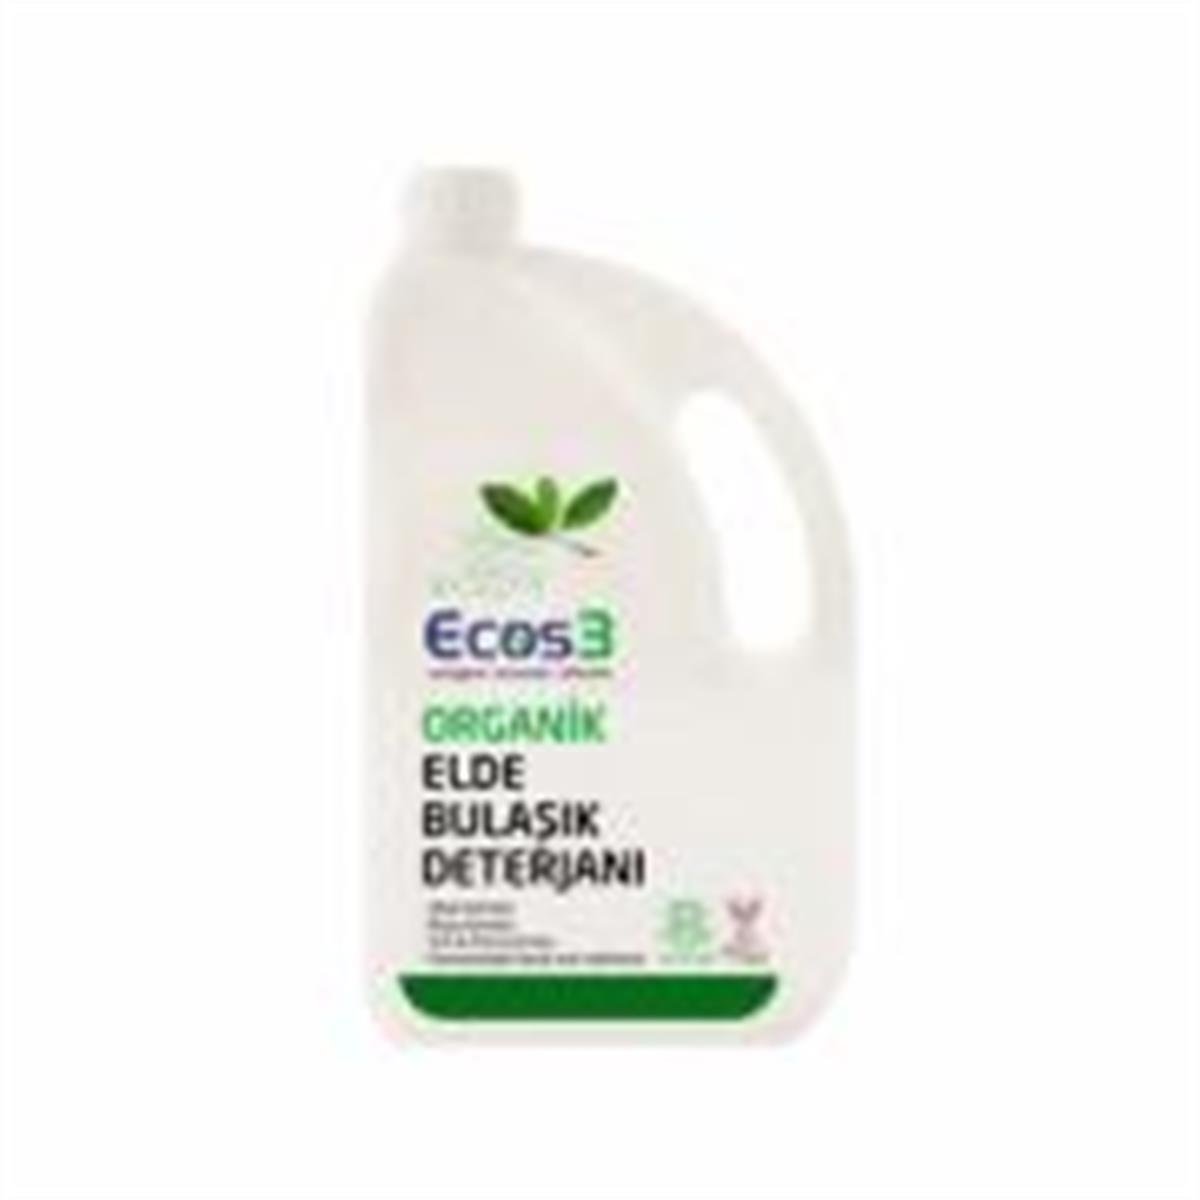 Ecos3 Organik Elde Bulaşık Deterjanı (2500 Ml) | Datça Murat Çiftliği